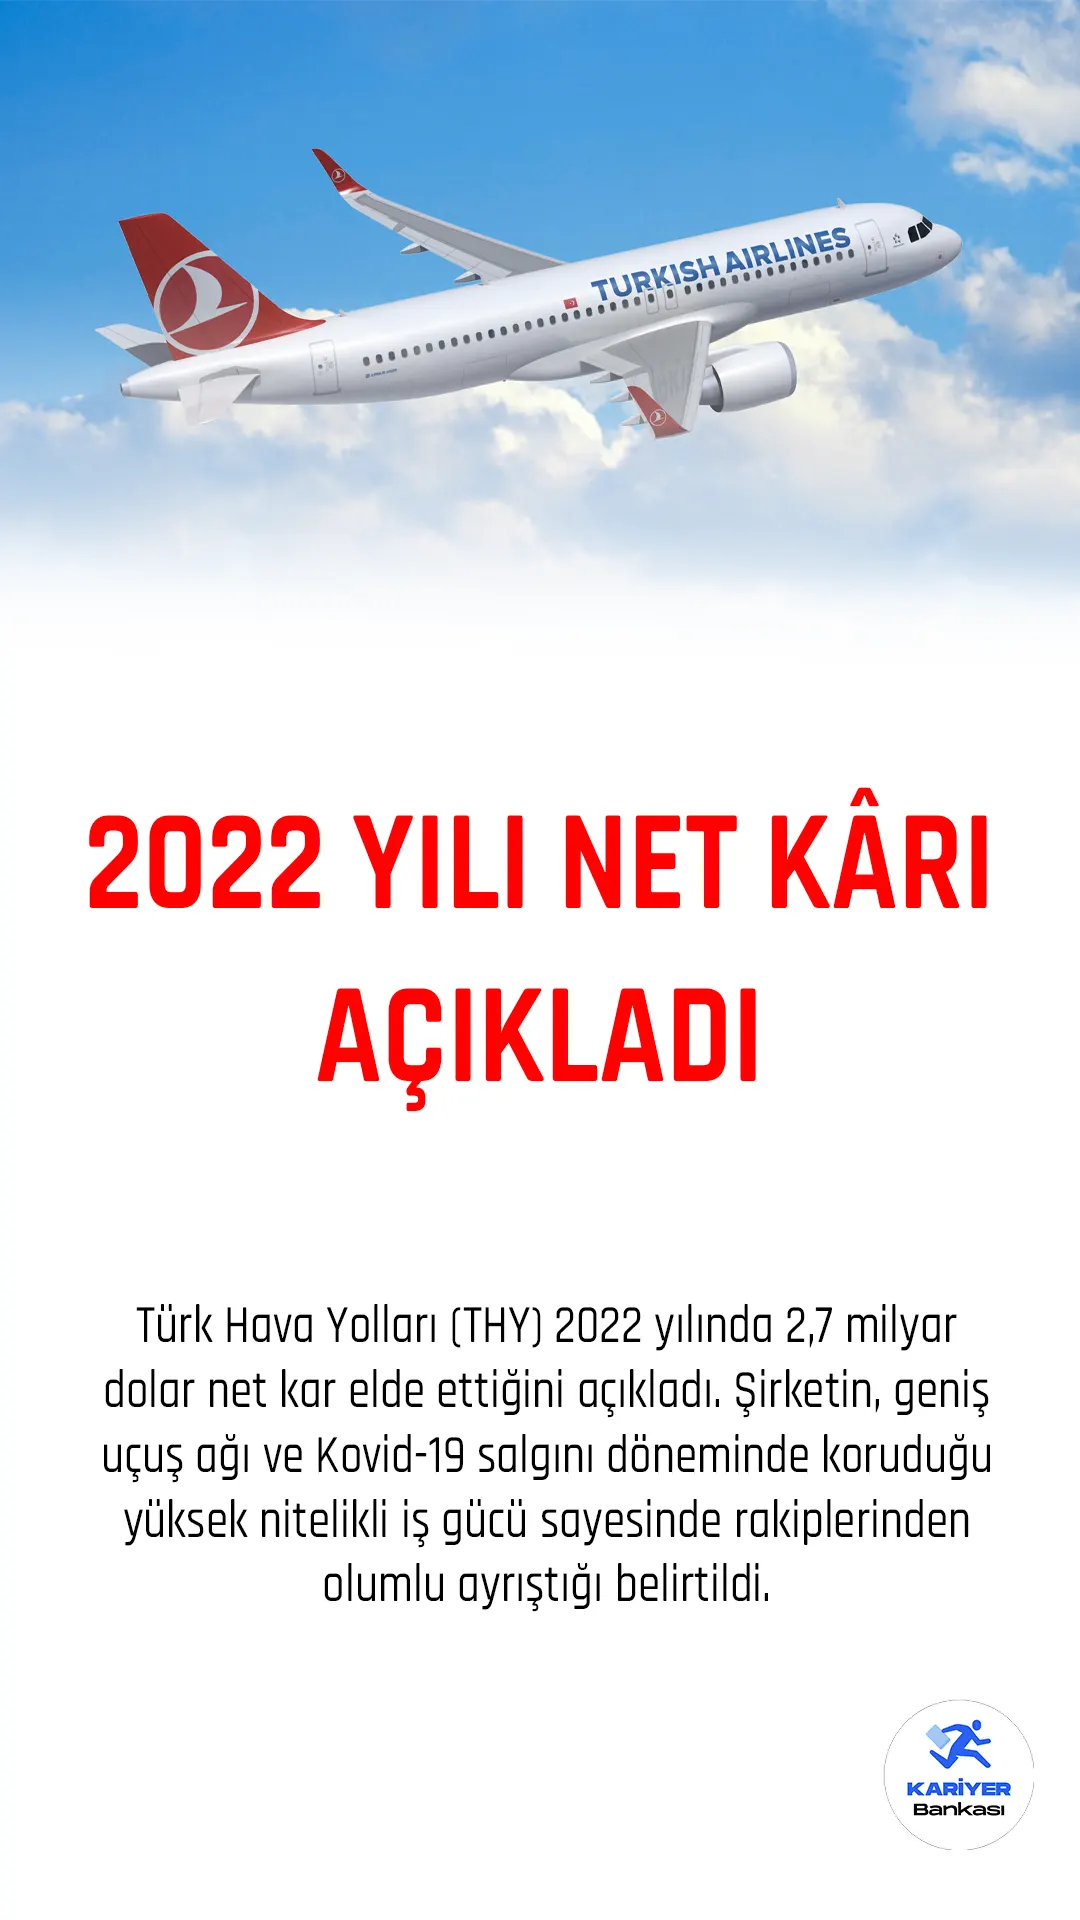 Türk Hava Yolları (THY) 2022 yılında 2,7 milyar dolar net kar elde ettiğini açıkladı.